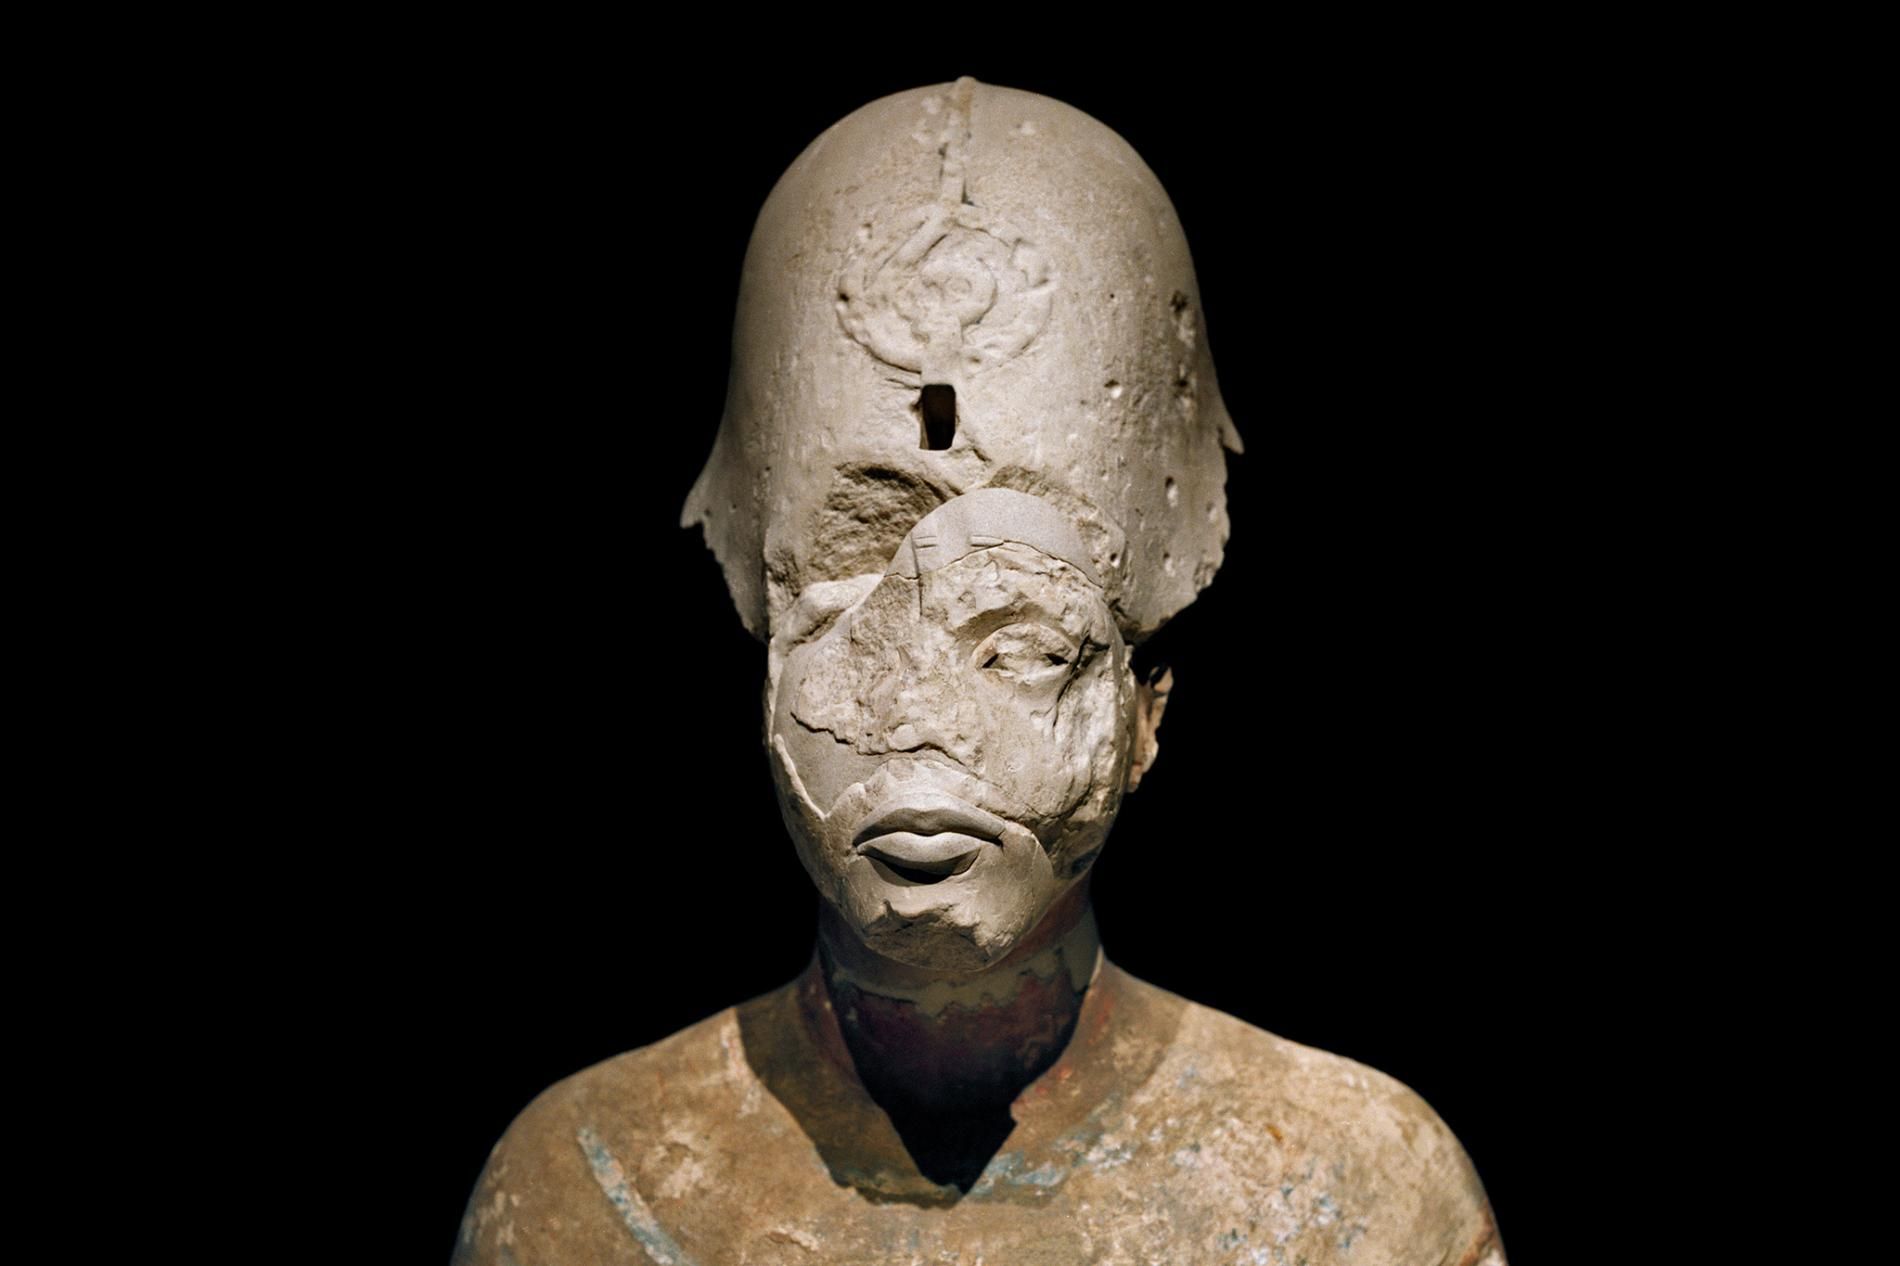 3 min 500 il əvvəlin ilk qıvrımsaçı – “MUMİYA” filmindəki Amenhoteplə bağlı ALİMLƏRDƏN TAPINTI